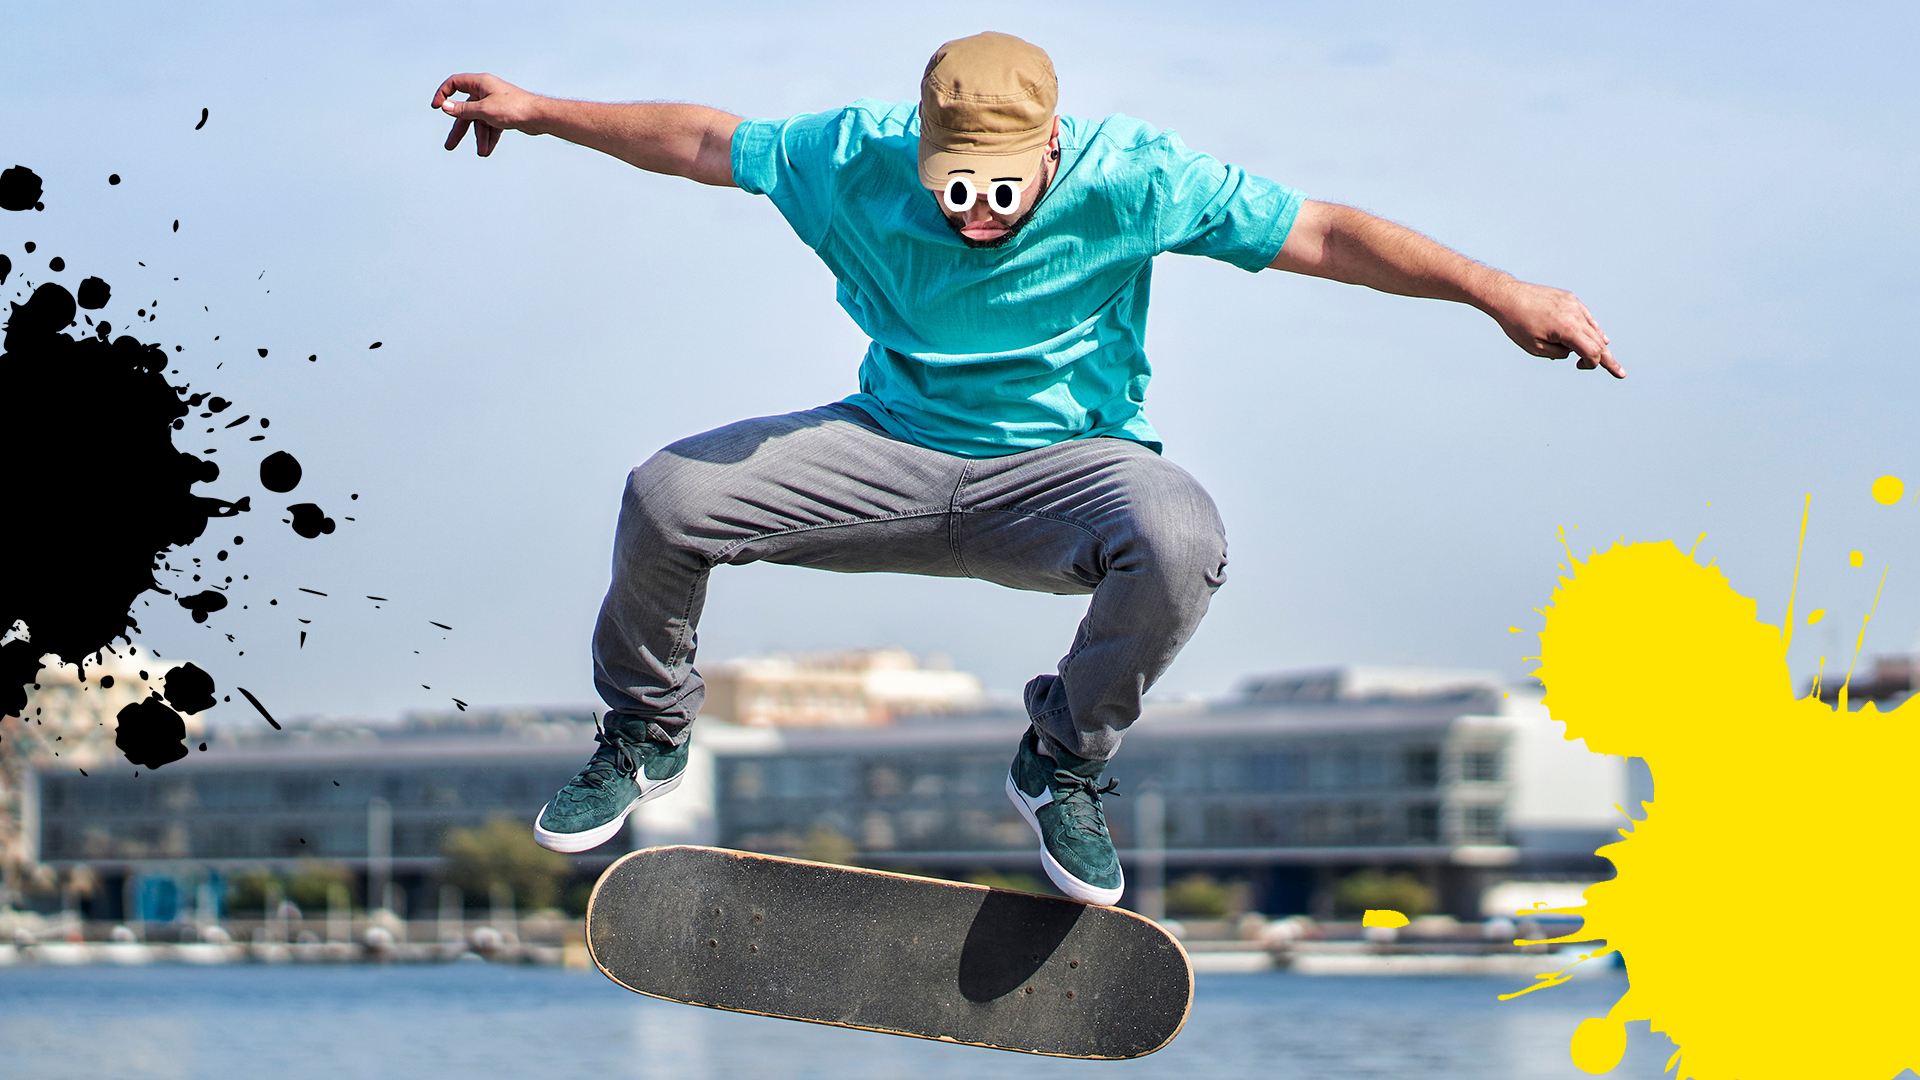 Boek In het algemeen bonen Don't Bail On This Gnarly Skateboarding Tricks Quiz! | Beano.com